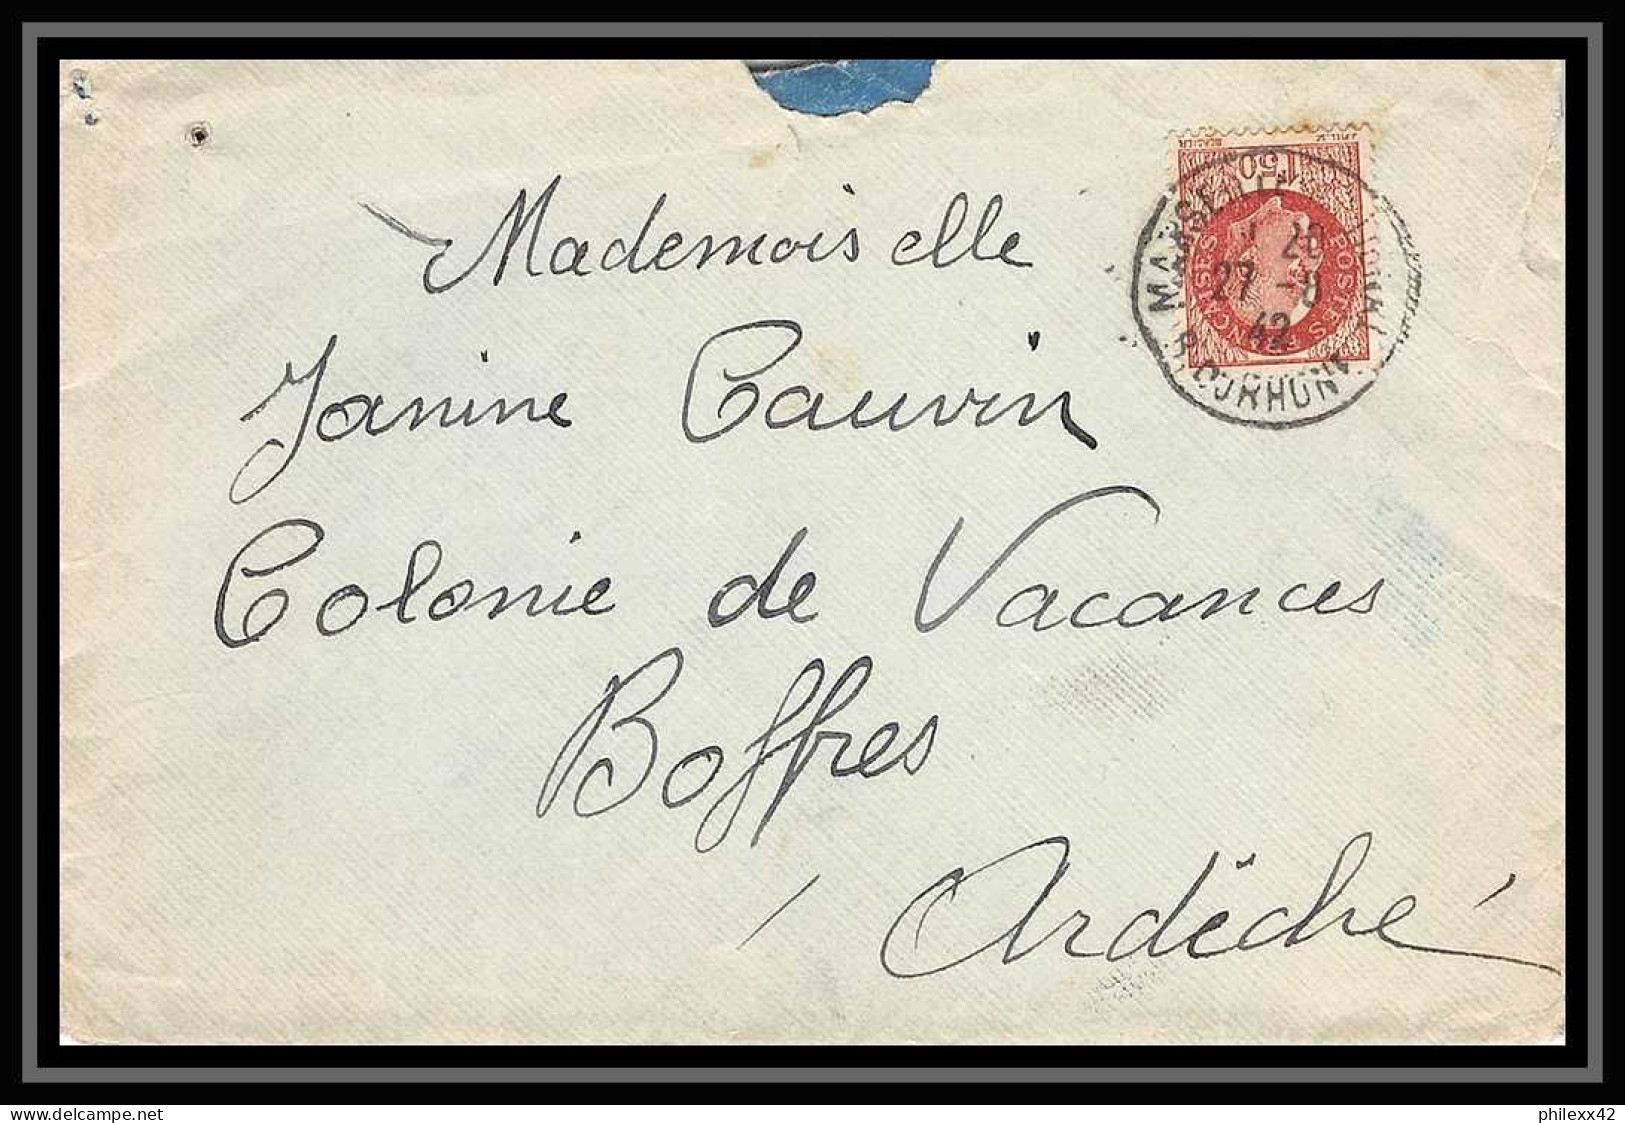 116050 lot de 13 Lettres cover Bouches du rhone Marseille National dont recommandé Carte postale (postcard)